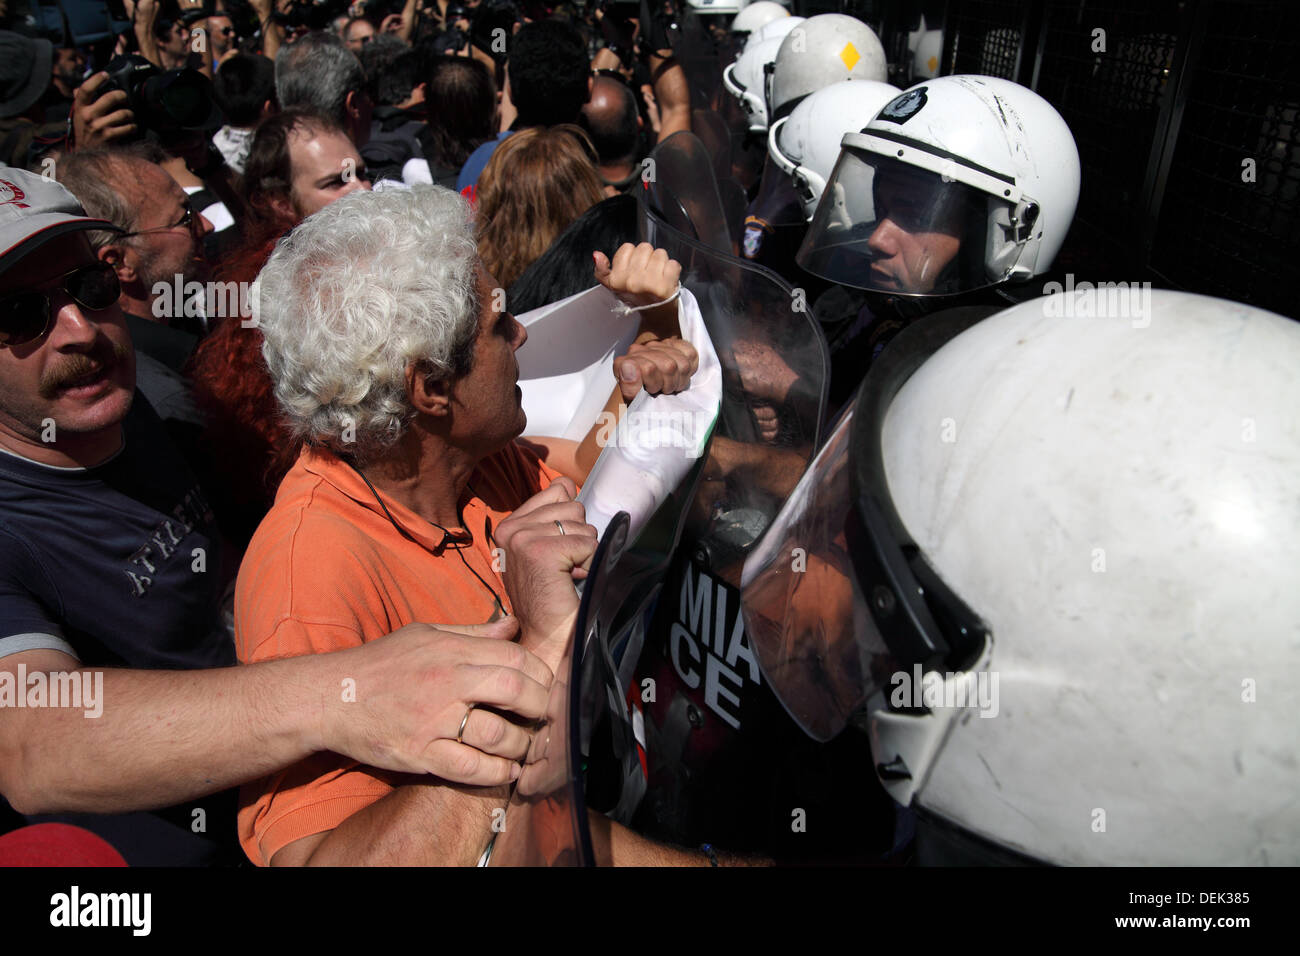 Atene, Grecia. 18 Settembre, 2013. Gli insegnanti greci di fronte con la polizia durante la protesta in Atene. Credito: dpa picture alliance/Alamy Live News Foto Stock